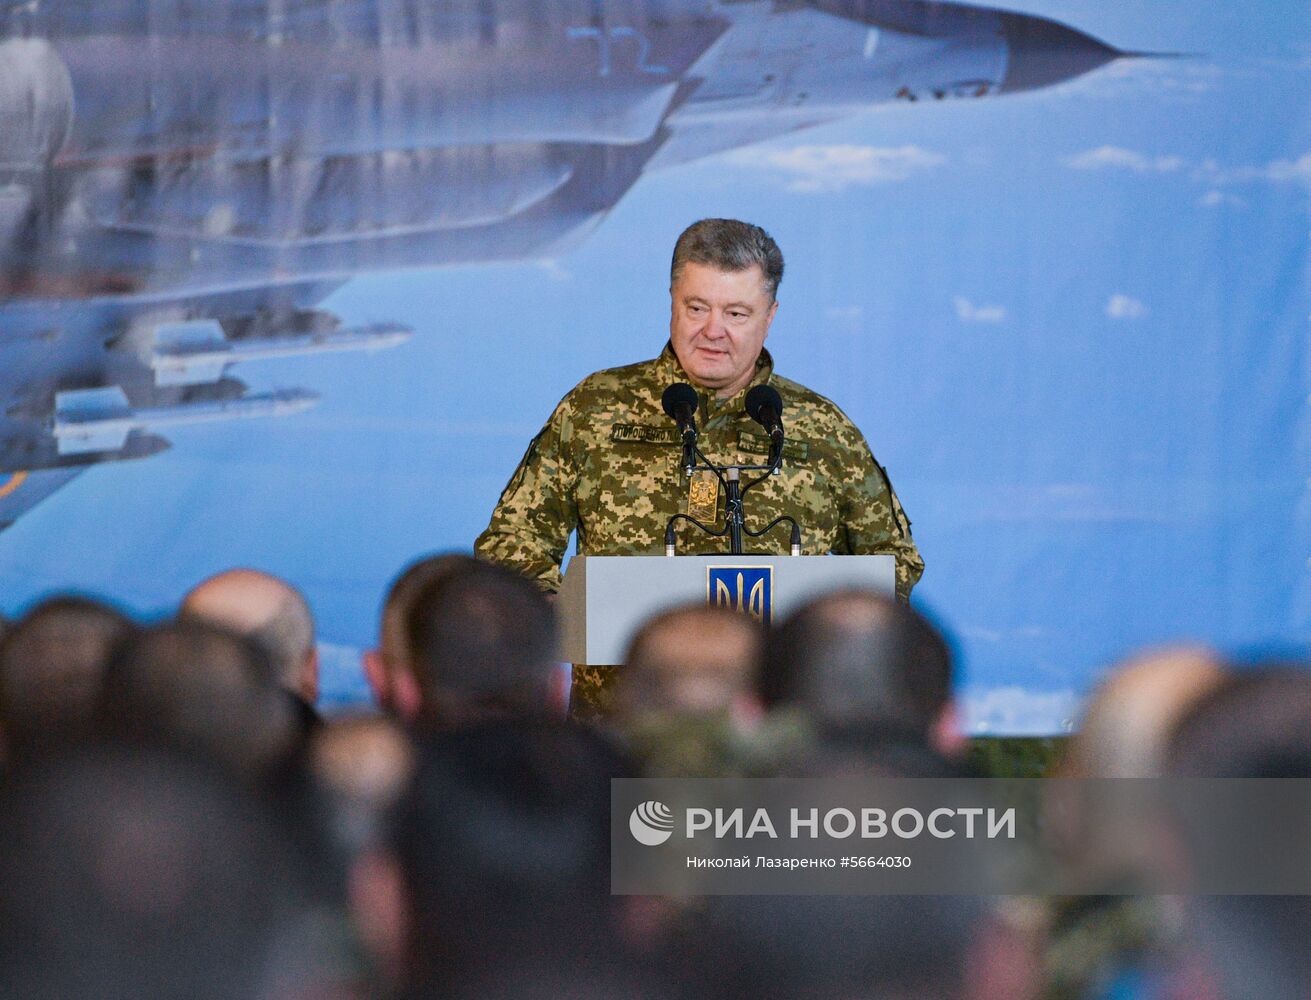 Президент Украины П. Порошенко посетил Объединенный операционный центр сил многонациональных учений «Чистое небо-2018»